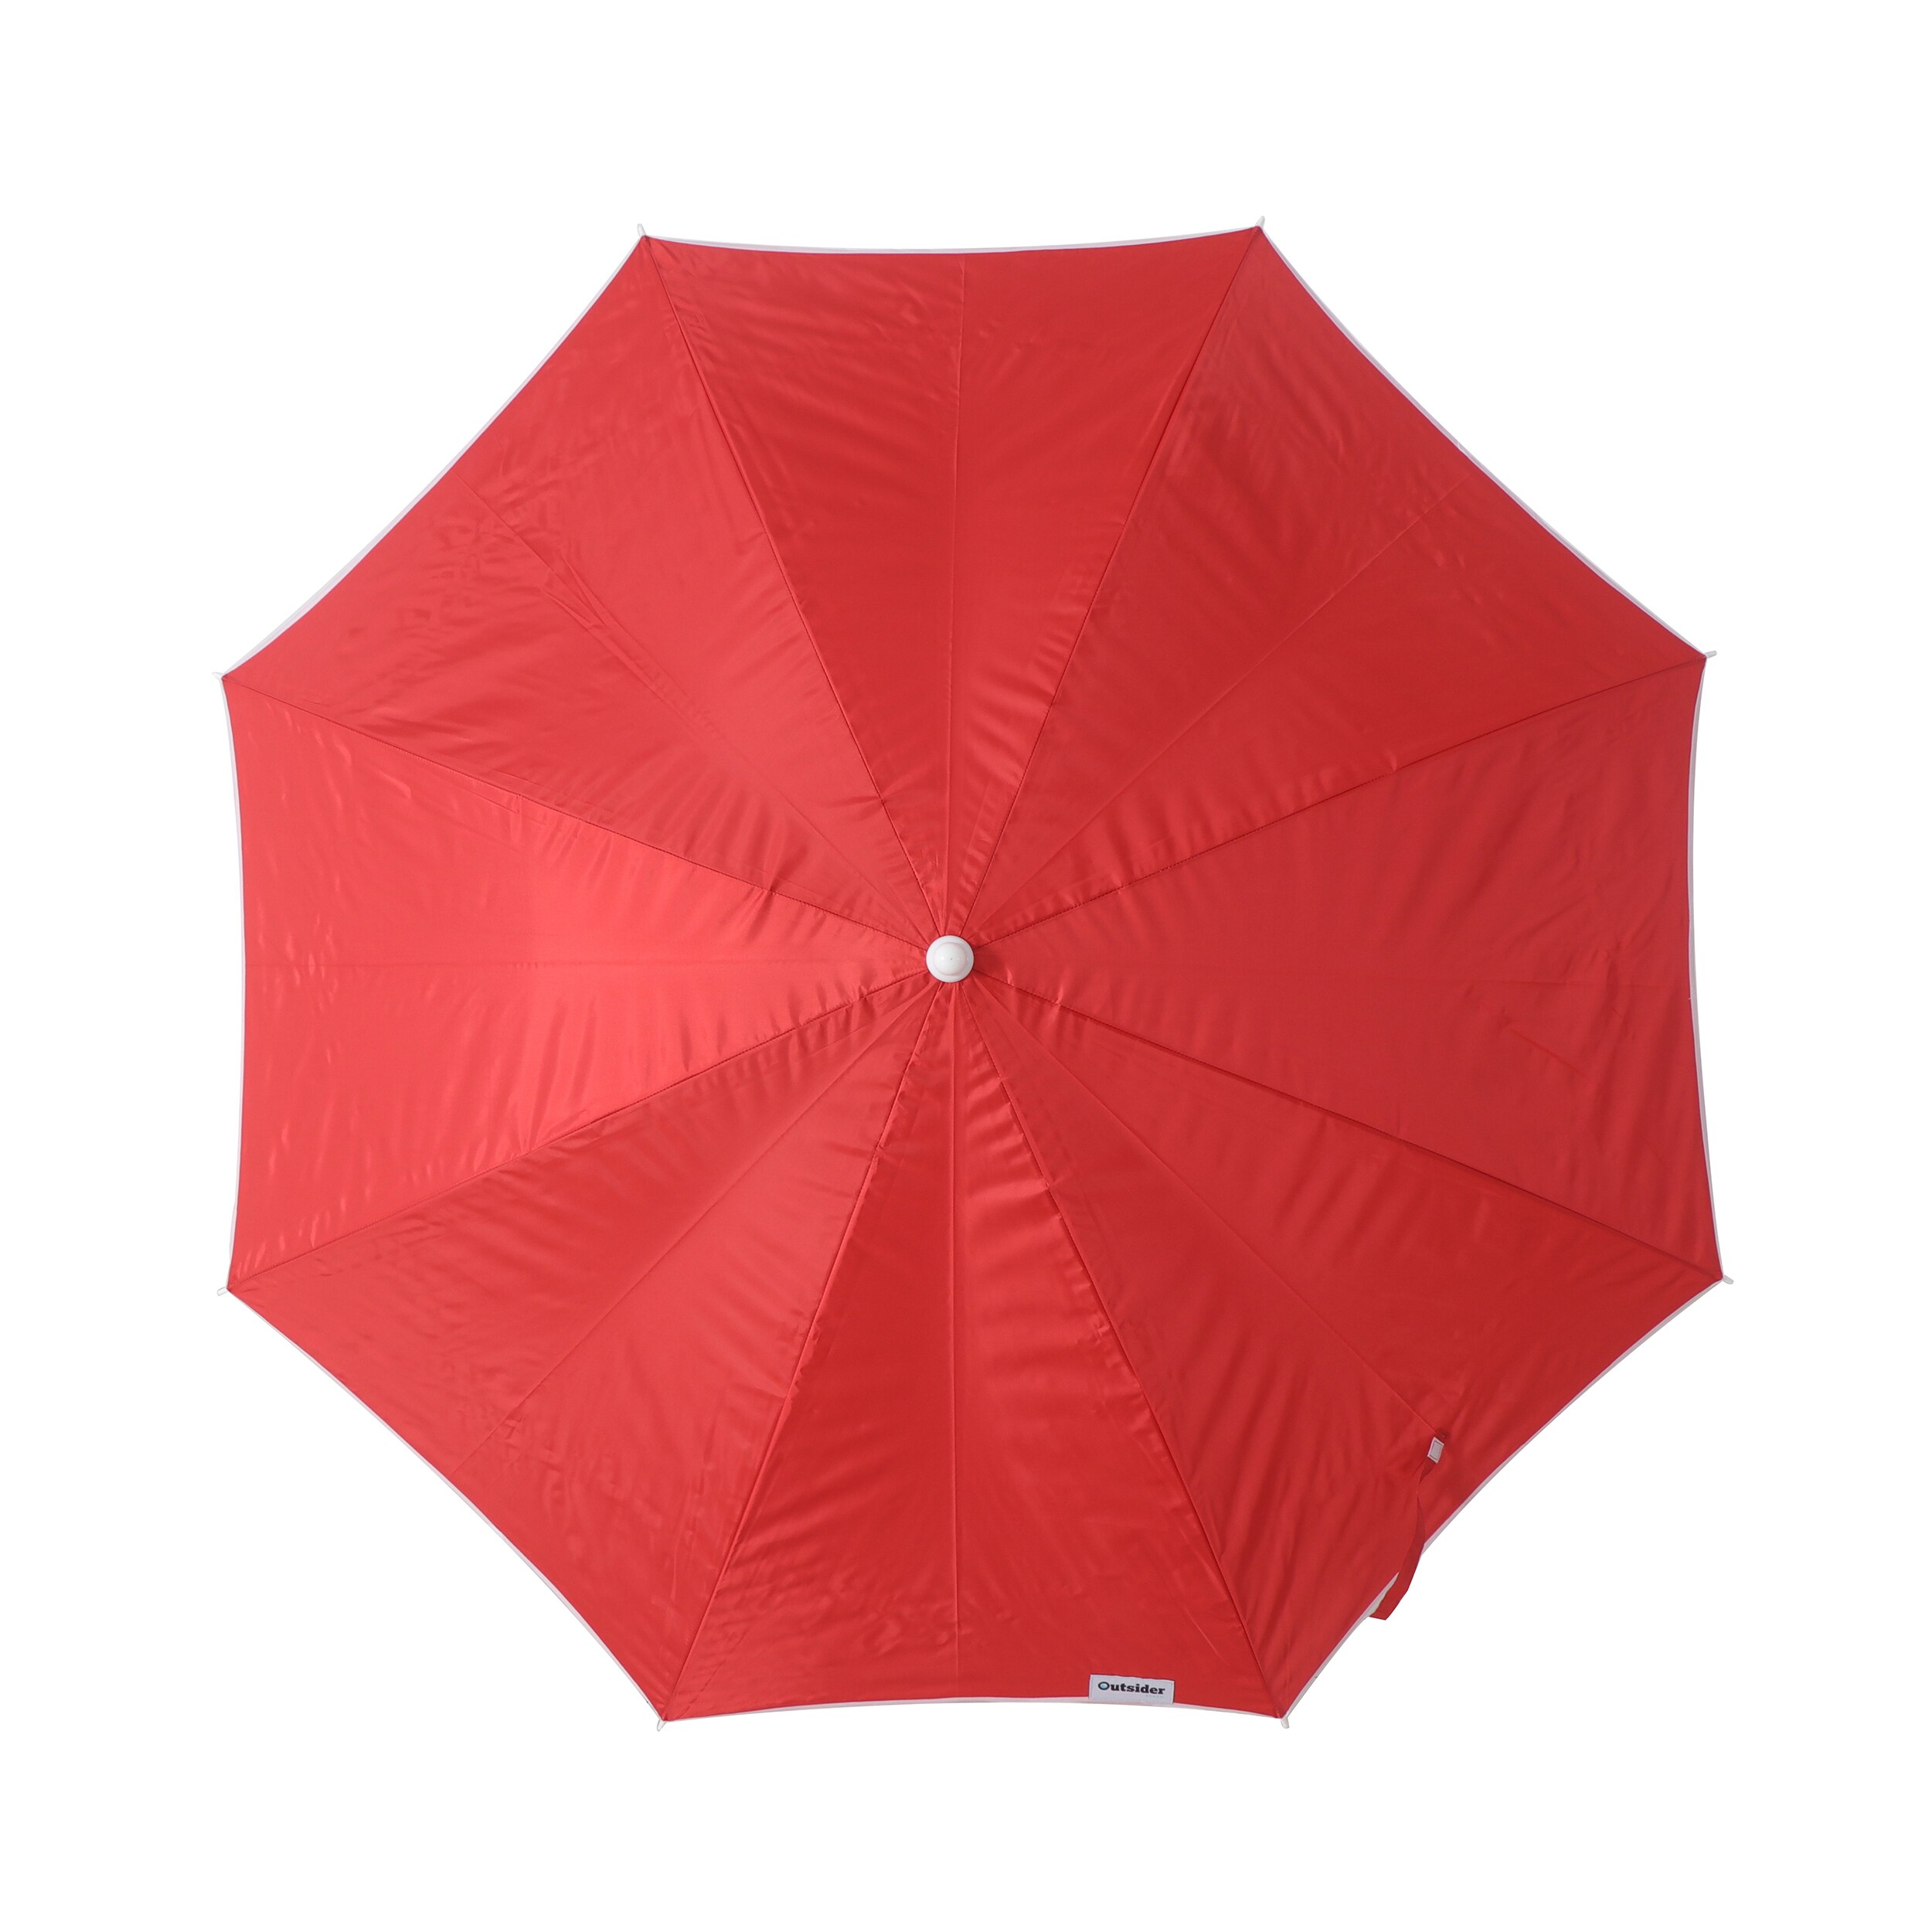 Outsunny Arc. 6ft Beach Umbrella w/ Tilt Sistem Vent Carry Bag Red